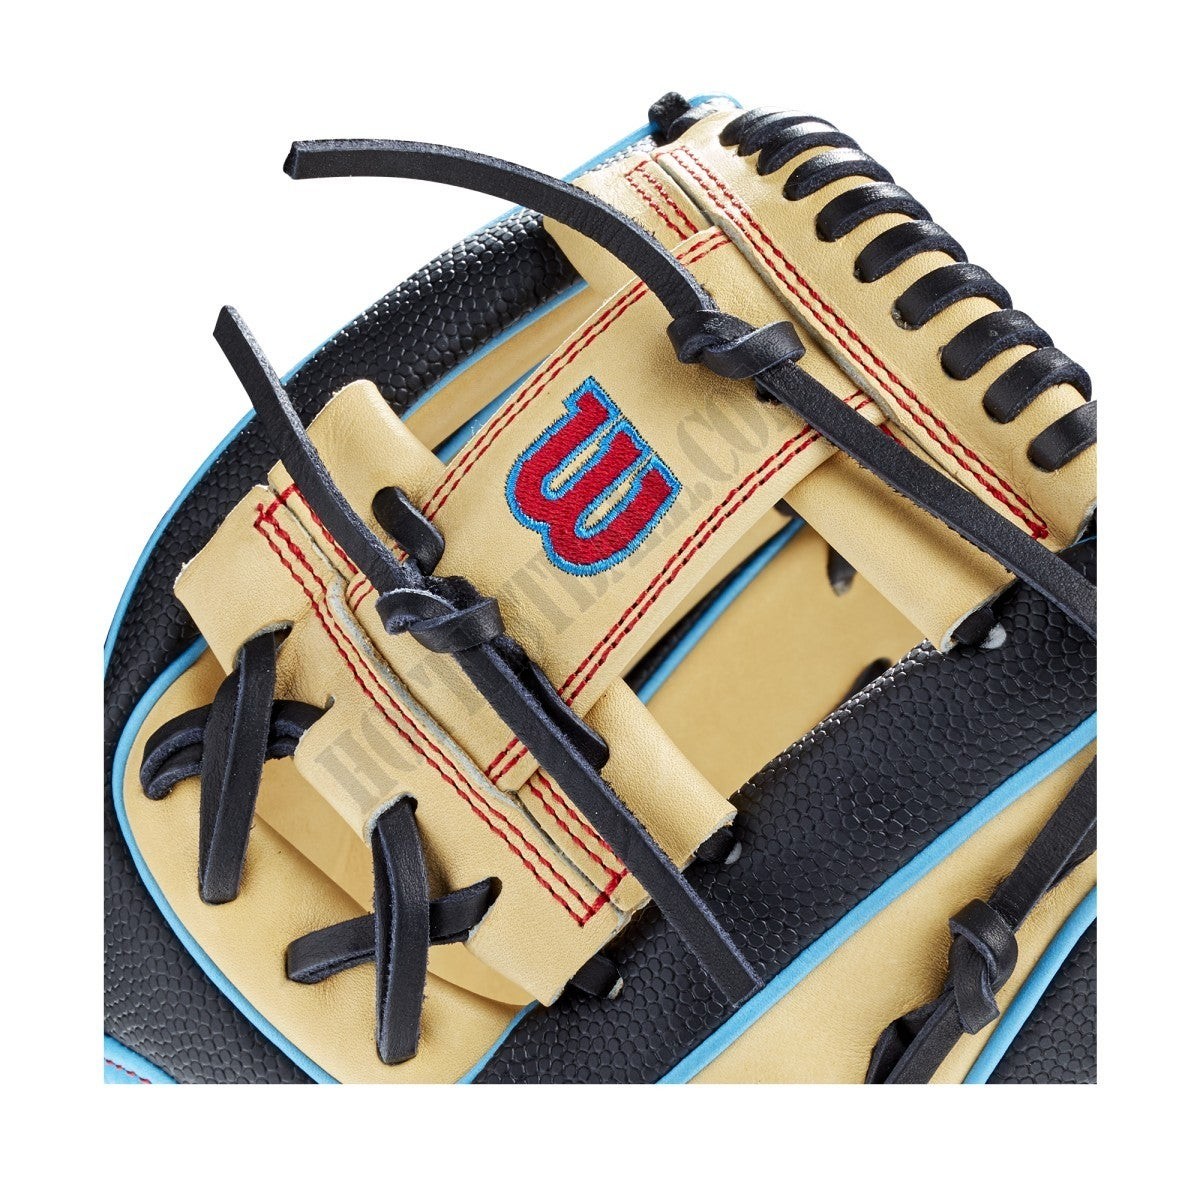 2021 A2000 DP15SS 11.5" Infield Baseball Glove ● Wilson Promotions - -5